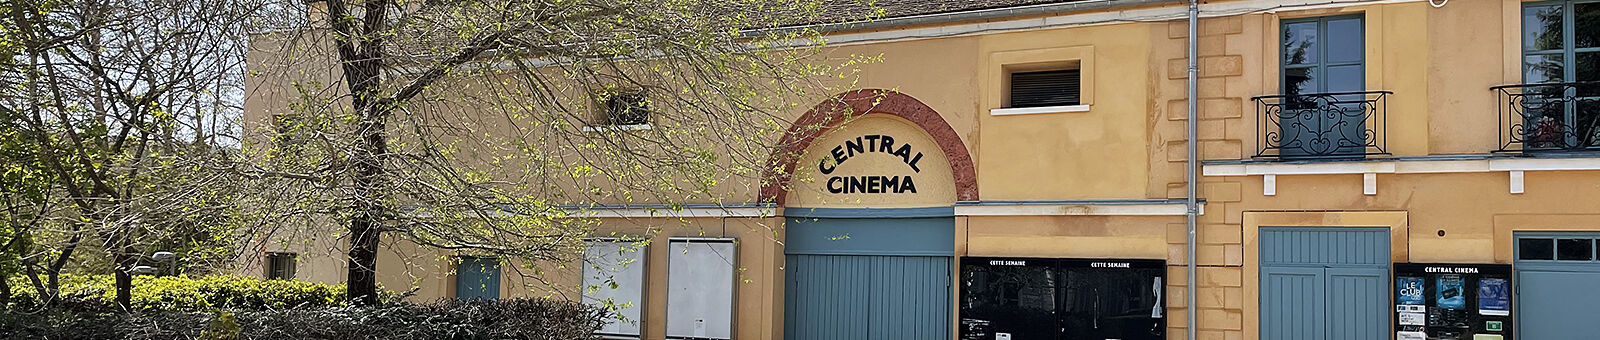 Le Central Cinéma - Avril 2021